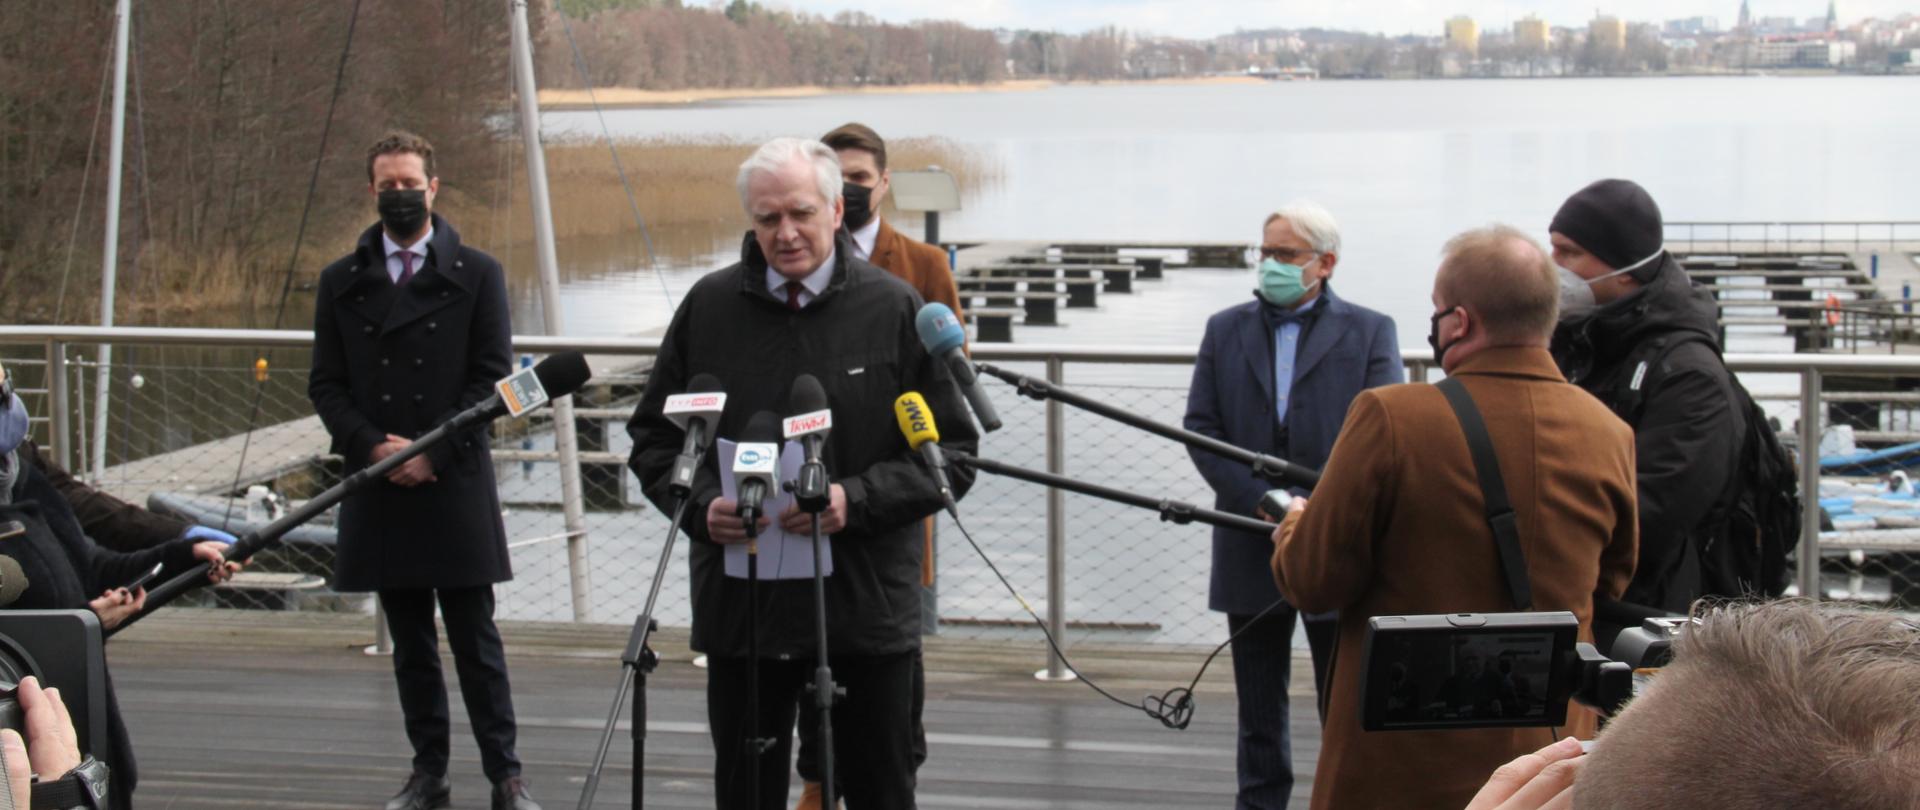 Jarosław Gowin podczas konferencji prasowej. Stoi na pomoście, za nim jezioro, przed nim dziennikarze.